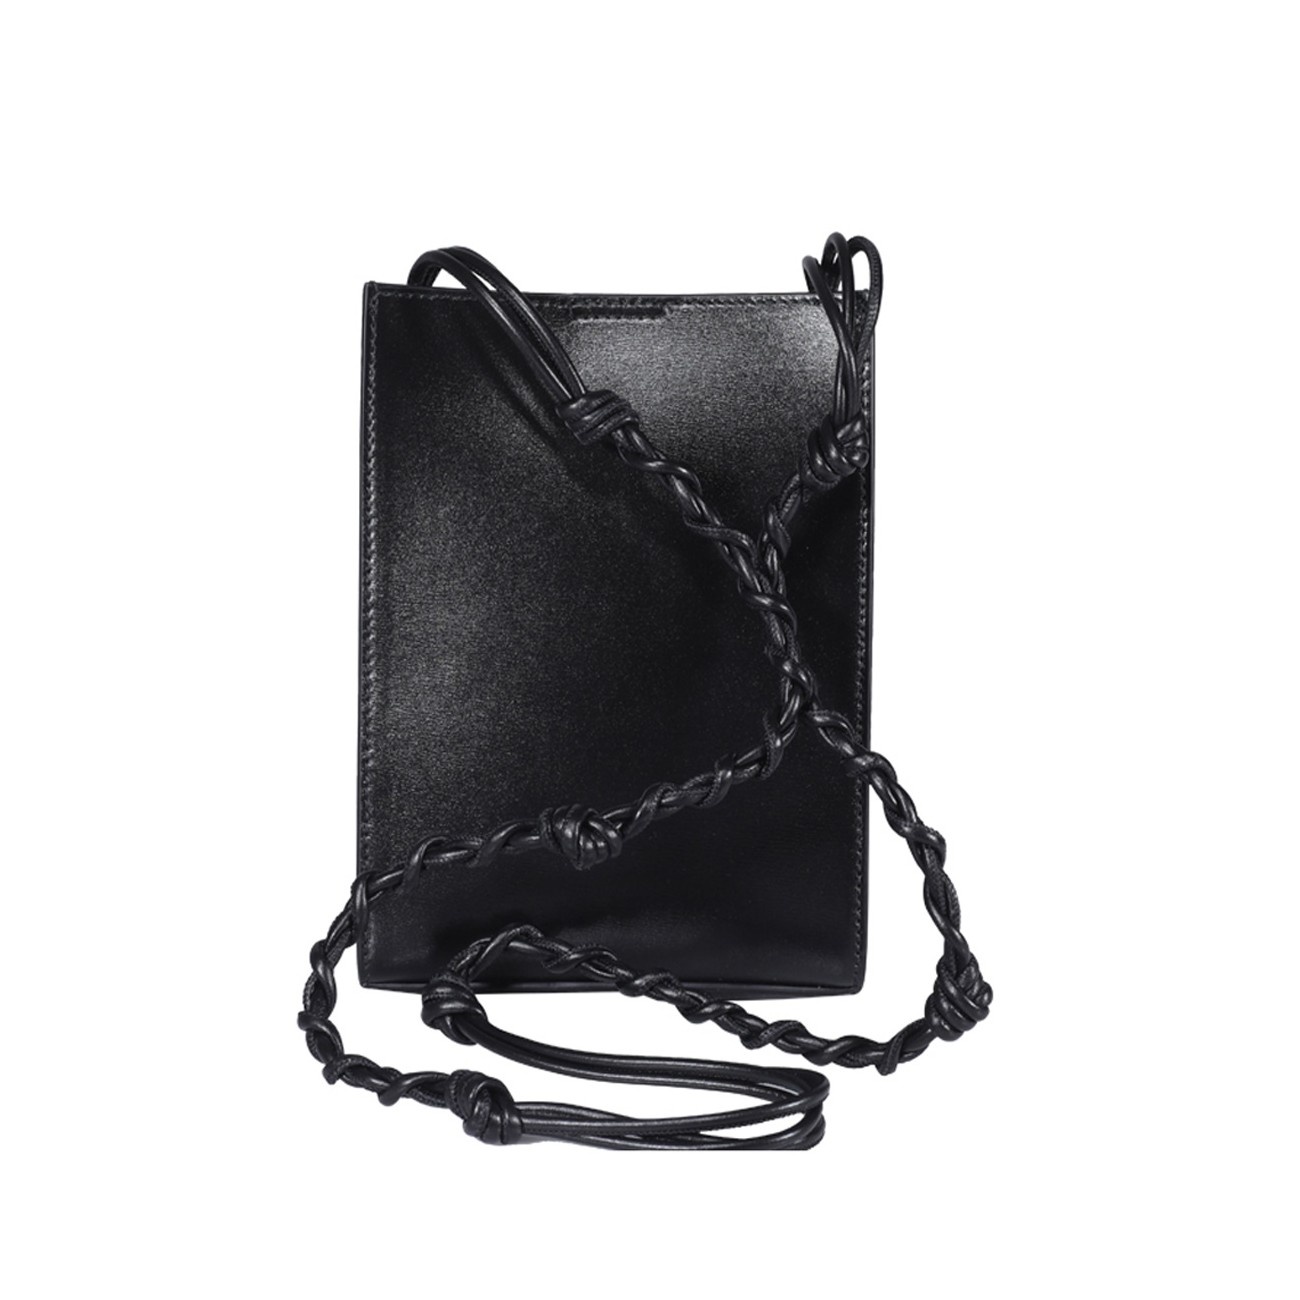 black leather tangle shoulder bag - 3